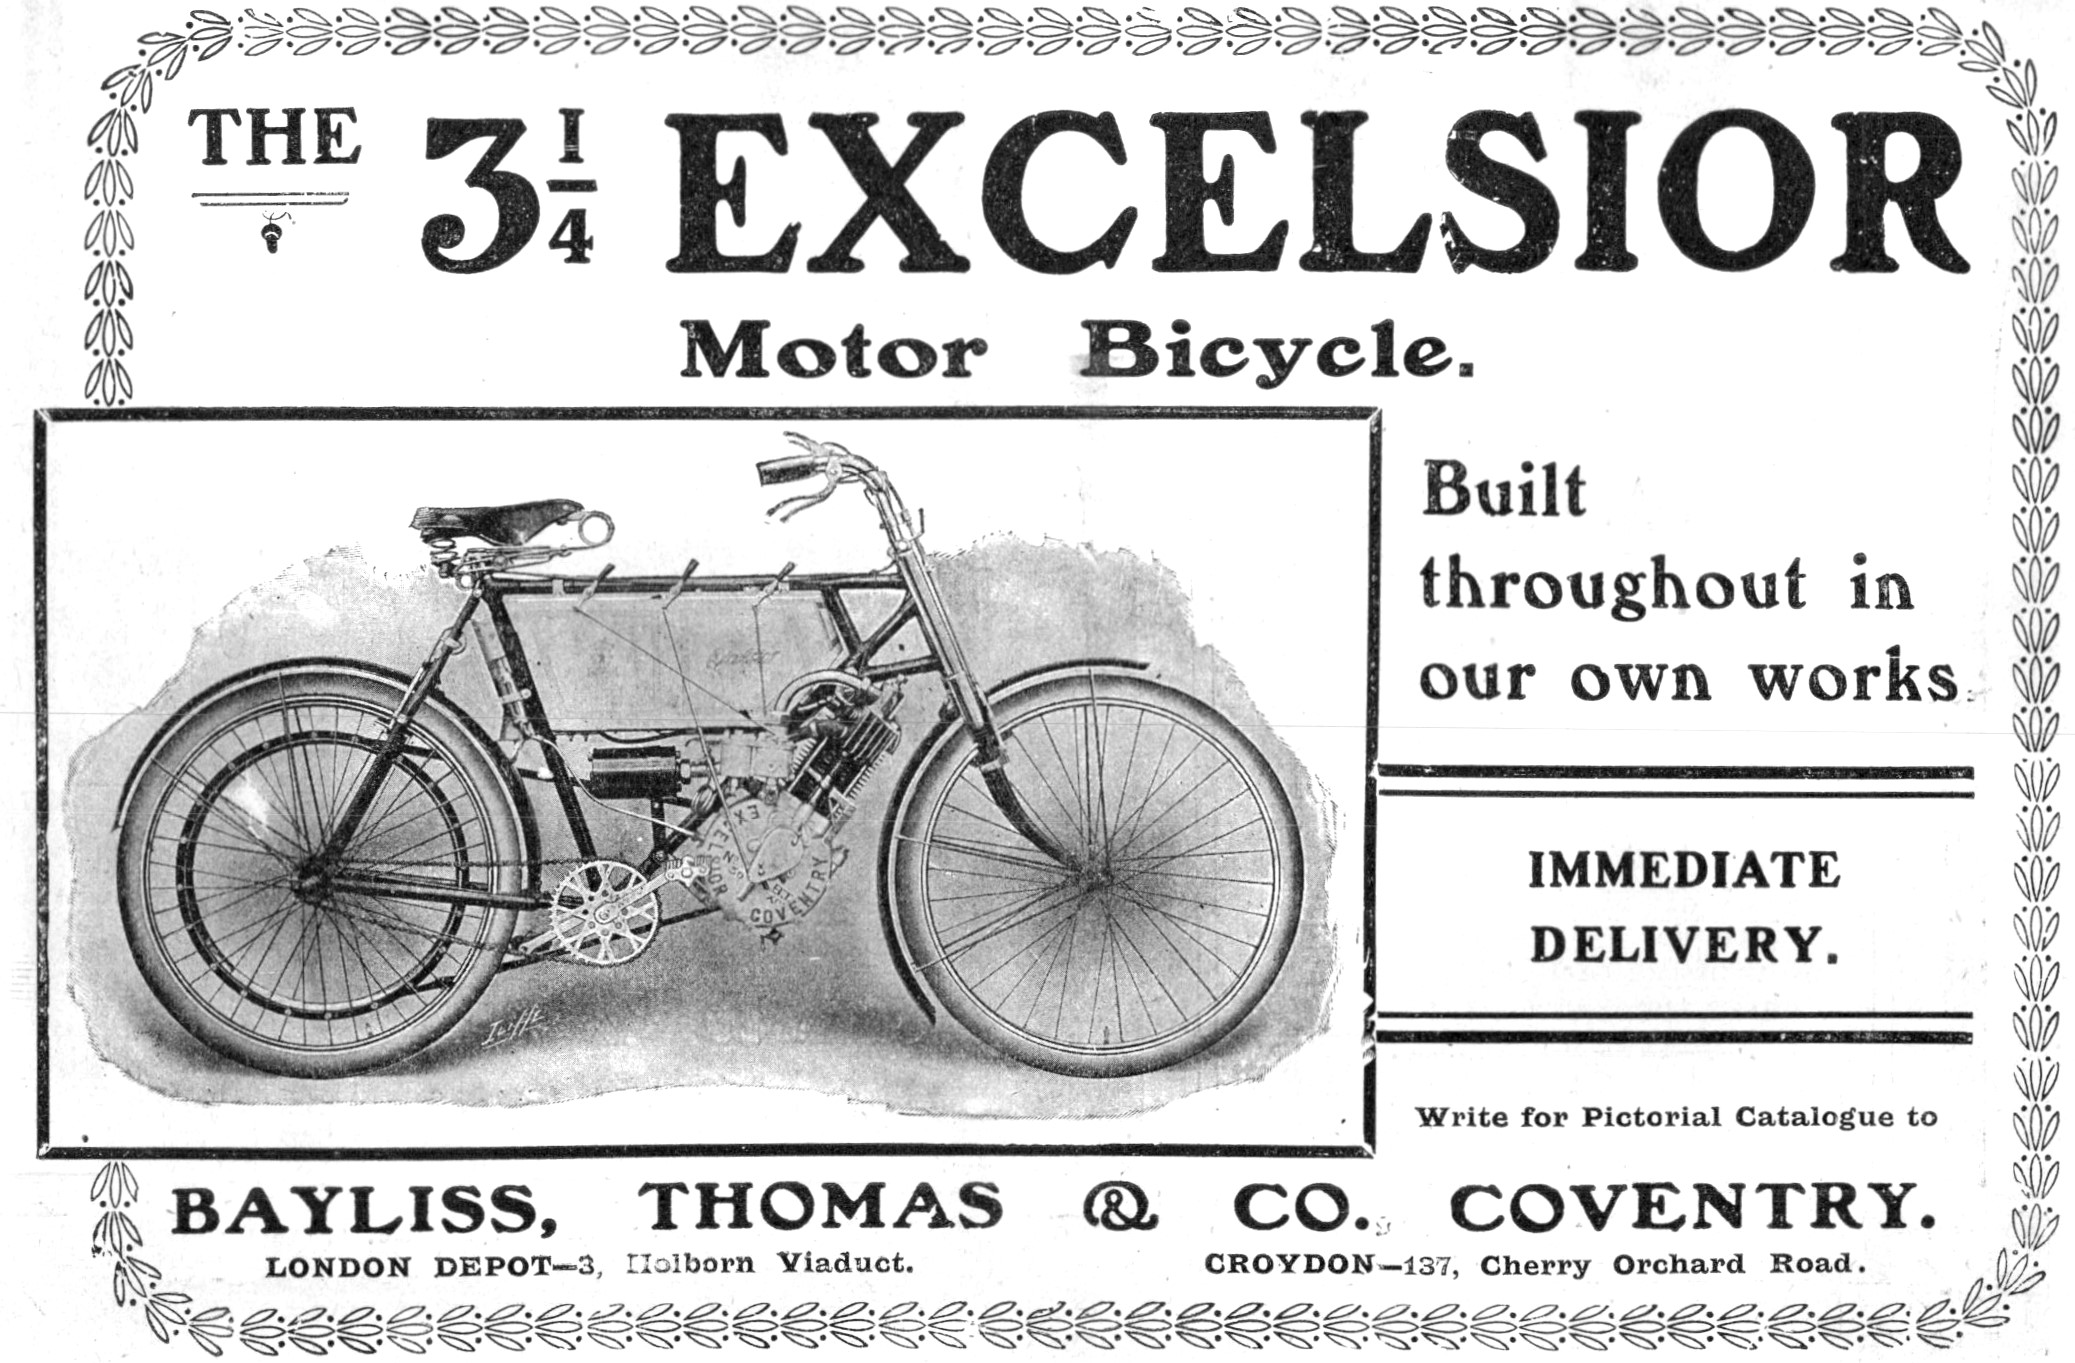 1904 Excelsior